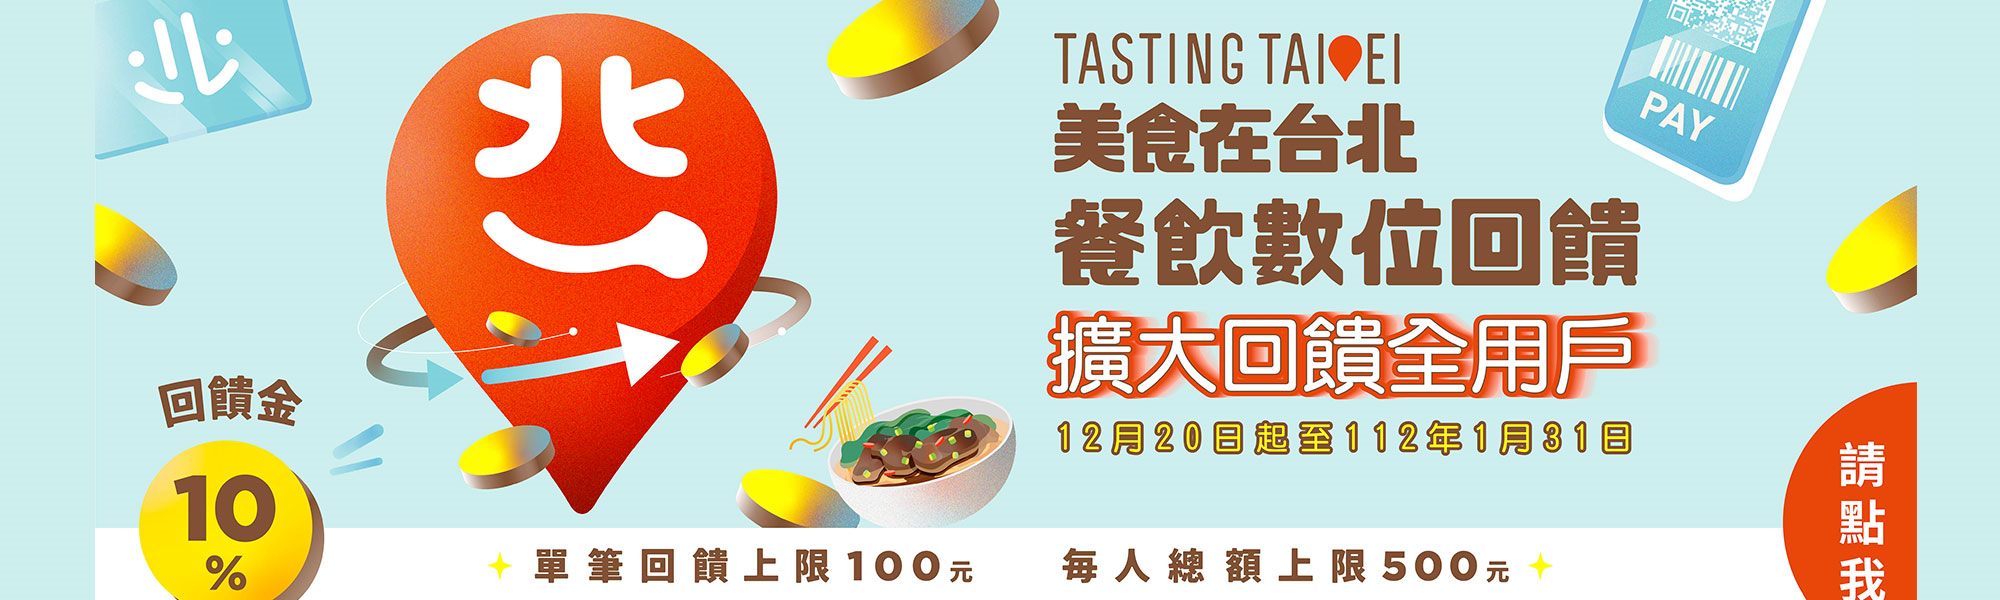 美食在台北-餐飲數位回饋